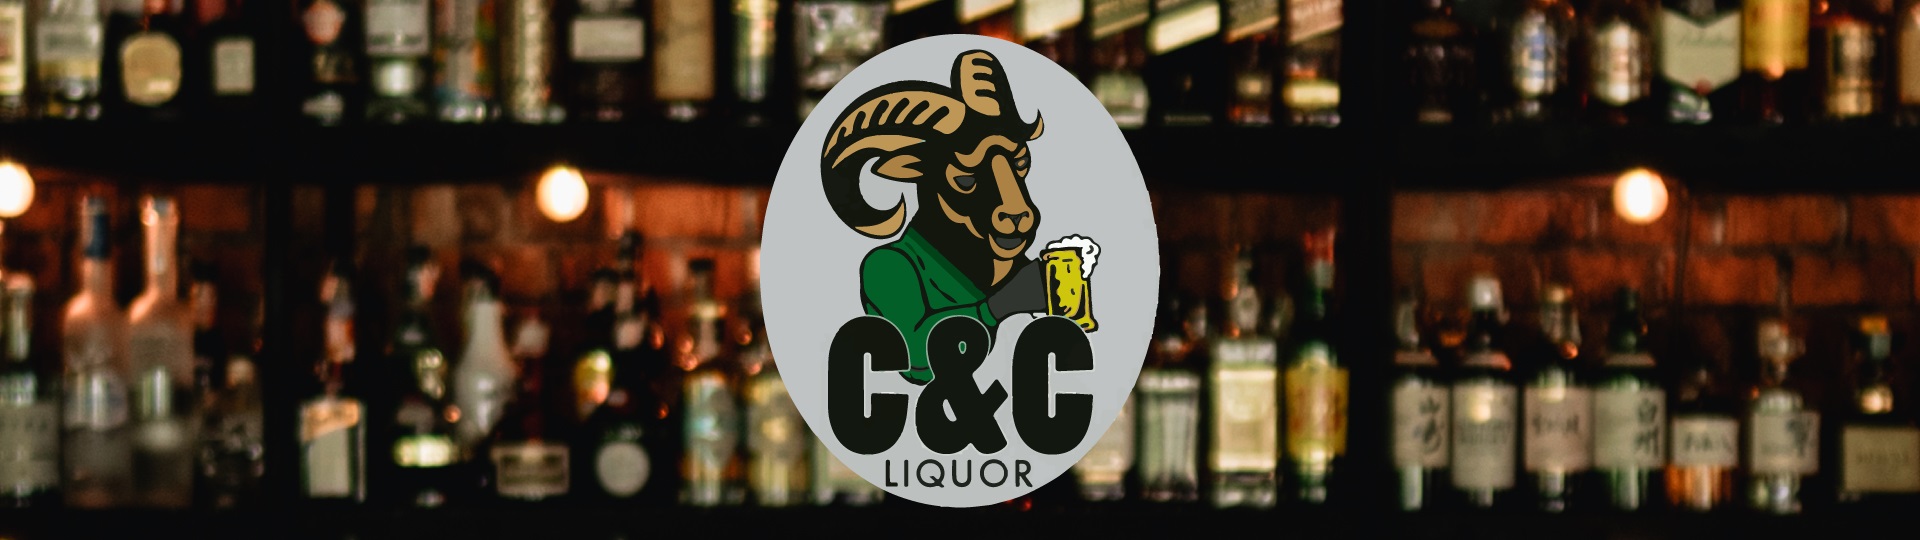 C&C Liquor Fort Collins